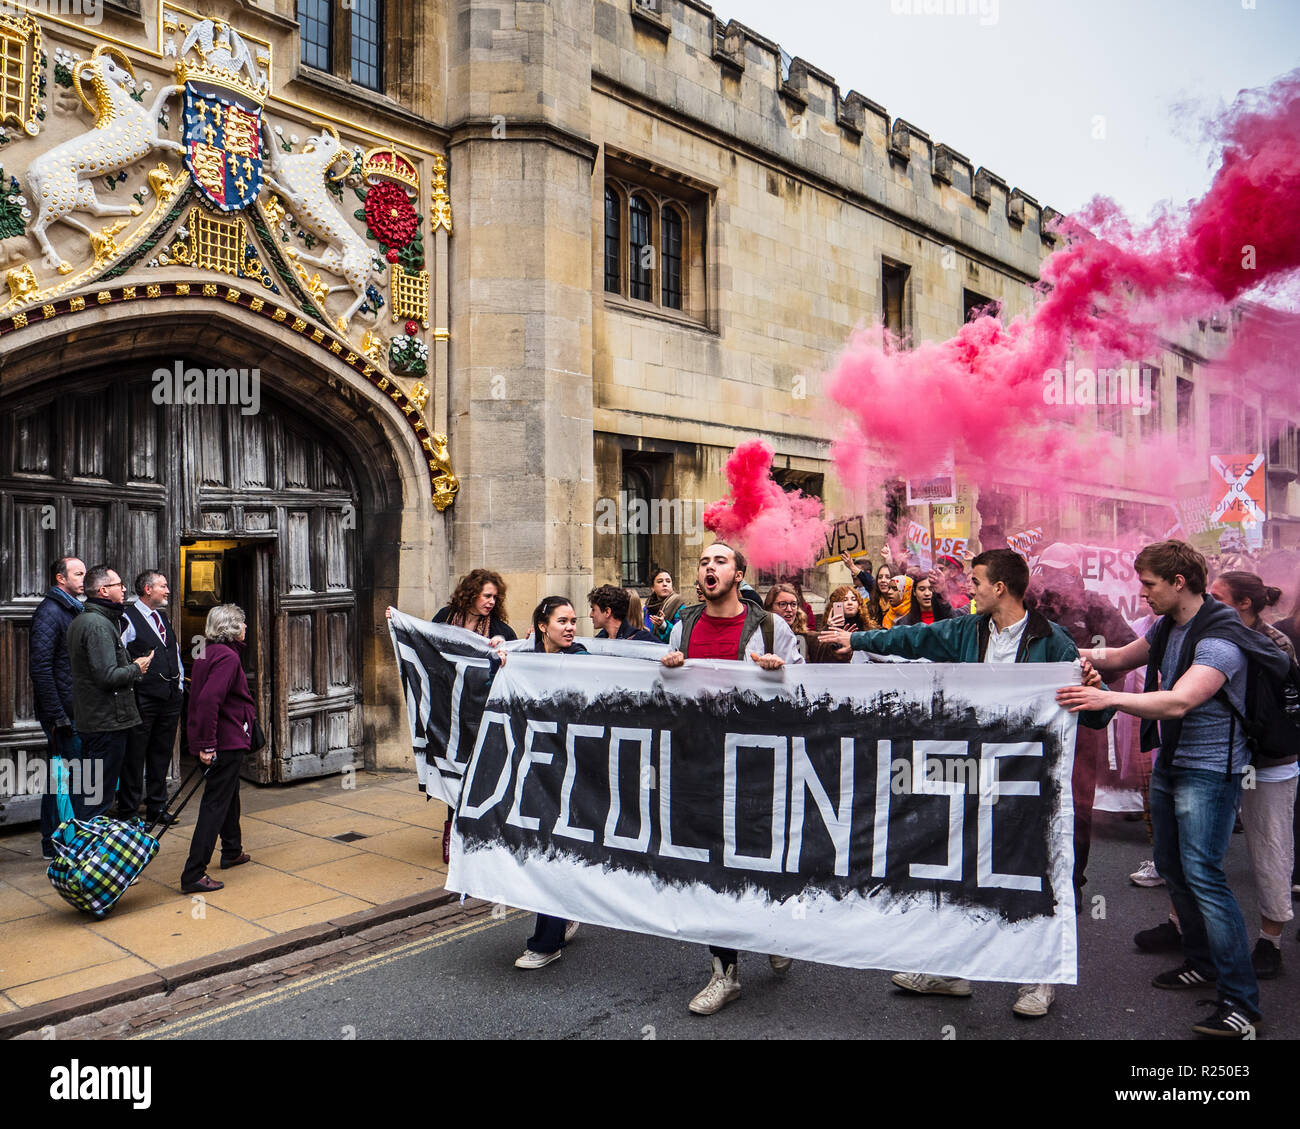 Cambridge, UK. 16 Nov 2018. Les étudiants de l'Université de Cambridge en mars centre de Cambridge le Ven 16 Nov 2018 exigeant l'Université céder ses investissements à l'éthique des armes et des connexions des combustibles fossiles Banque D'Images